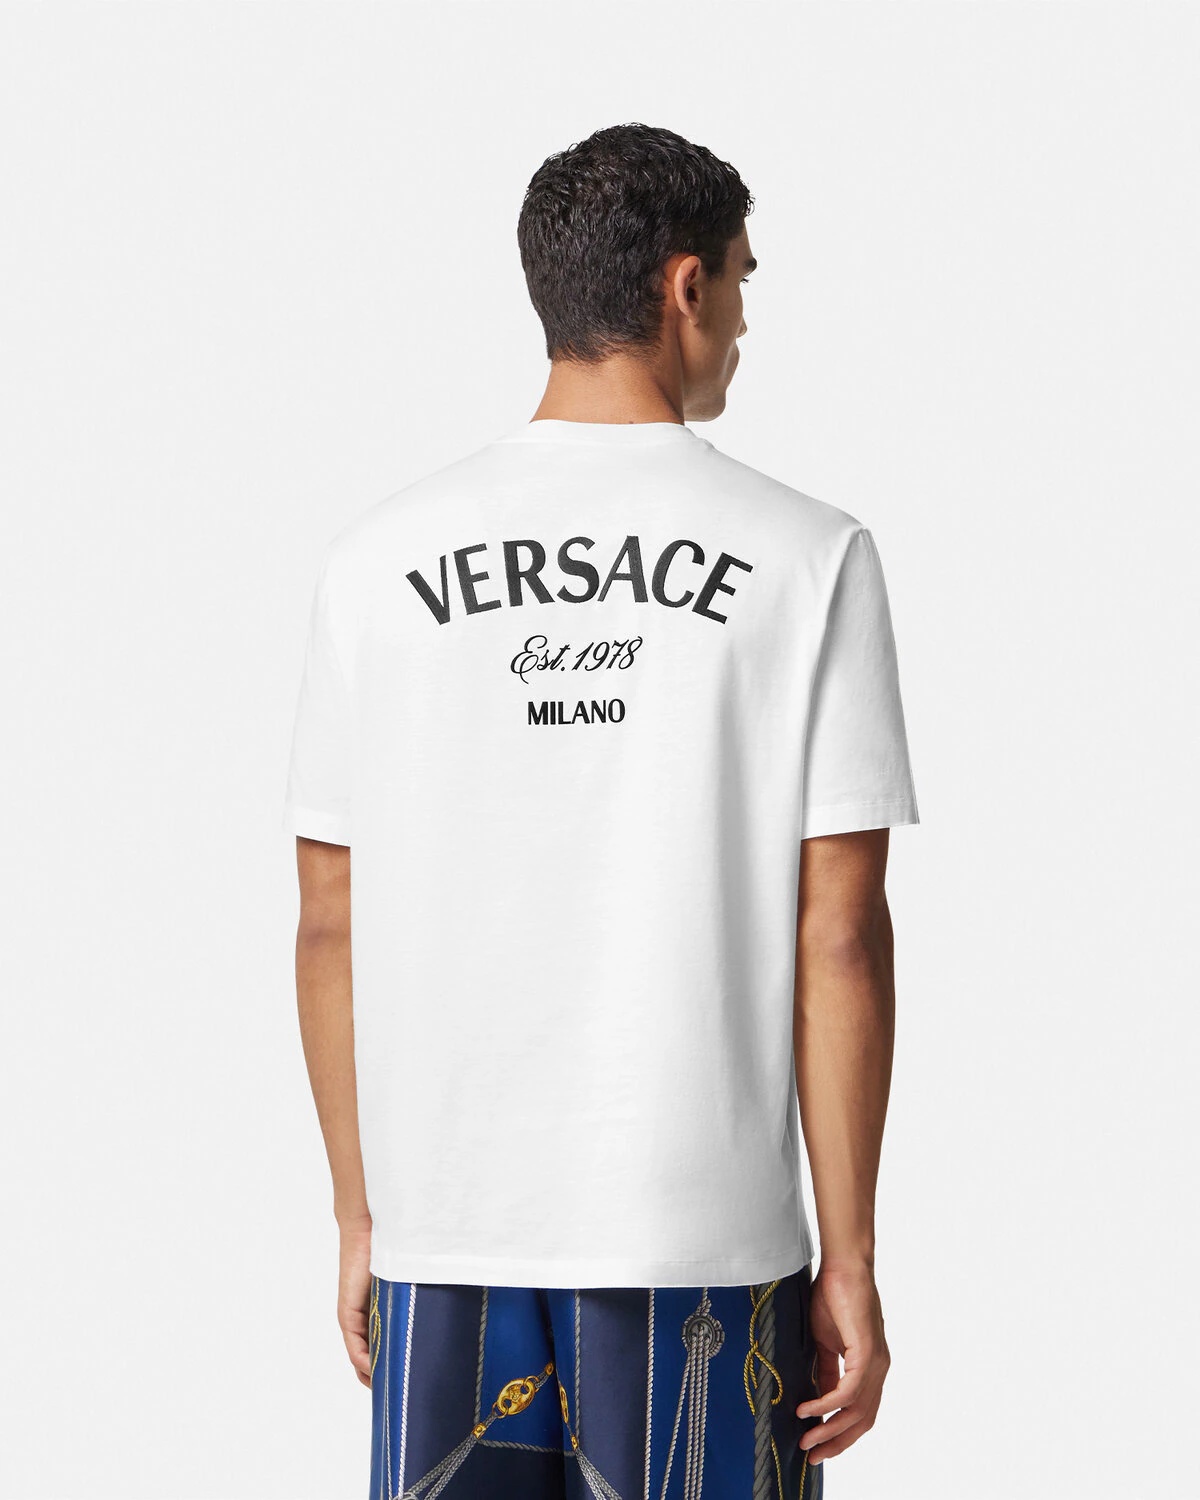 Versace Milano Stamp T-Shirt - 5